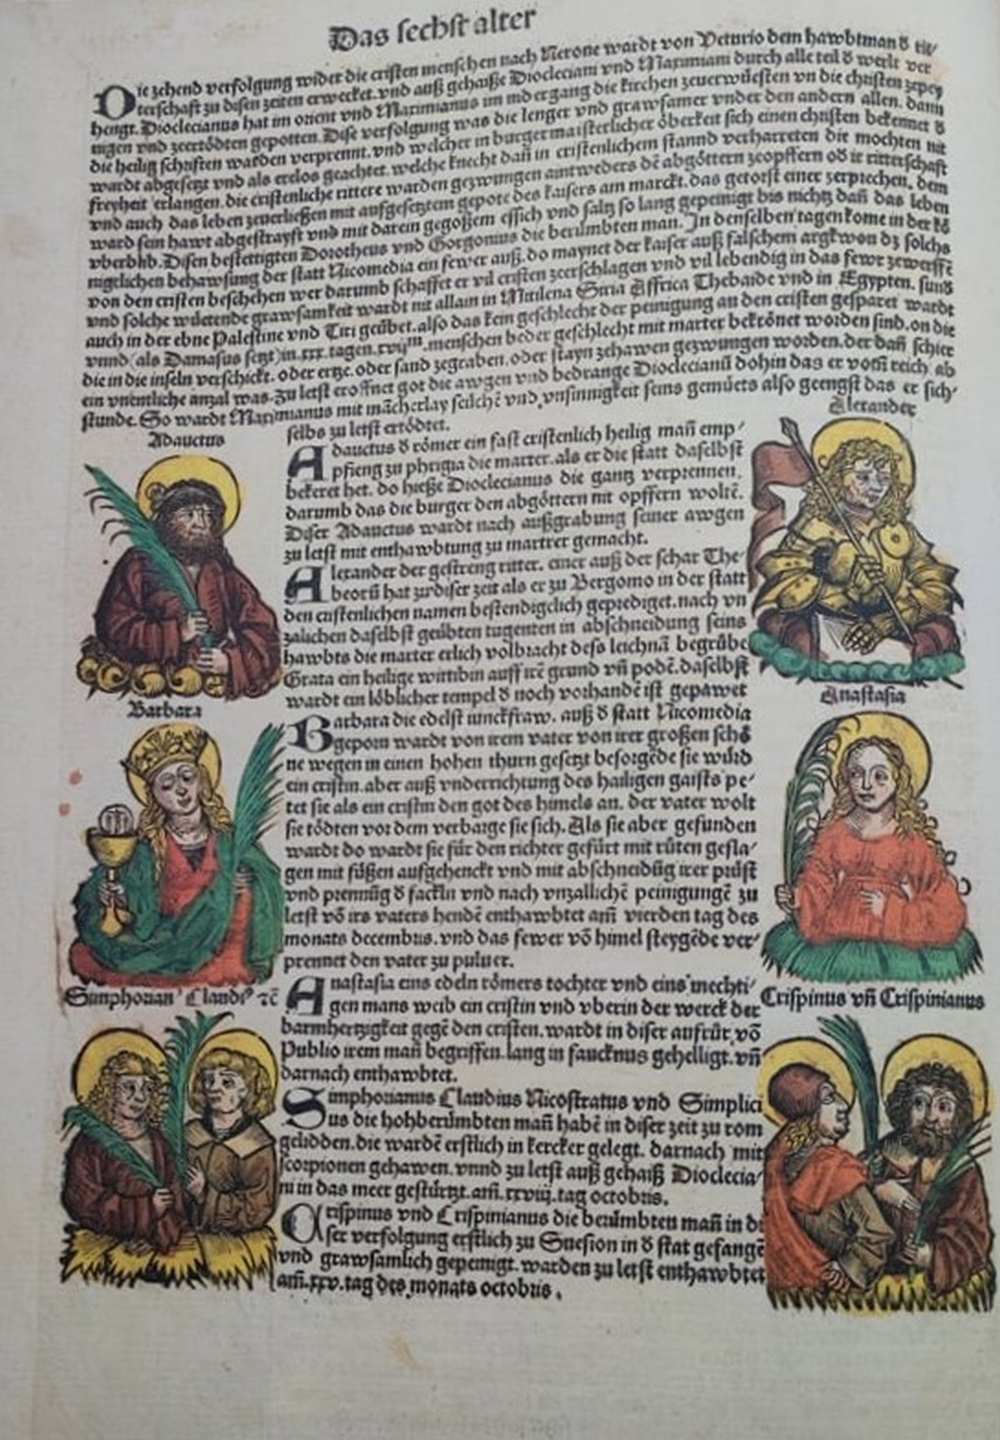 Szent Borbála. In: Schedel, Hartmann, Liber chronicarum: Das Buch der Chroniken, Nürnberg, 1493. Számos színezett fametszettel. RNYT, Inc. 88 – Régi Nyomtatványok Tára